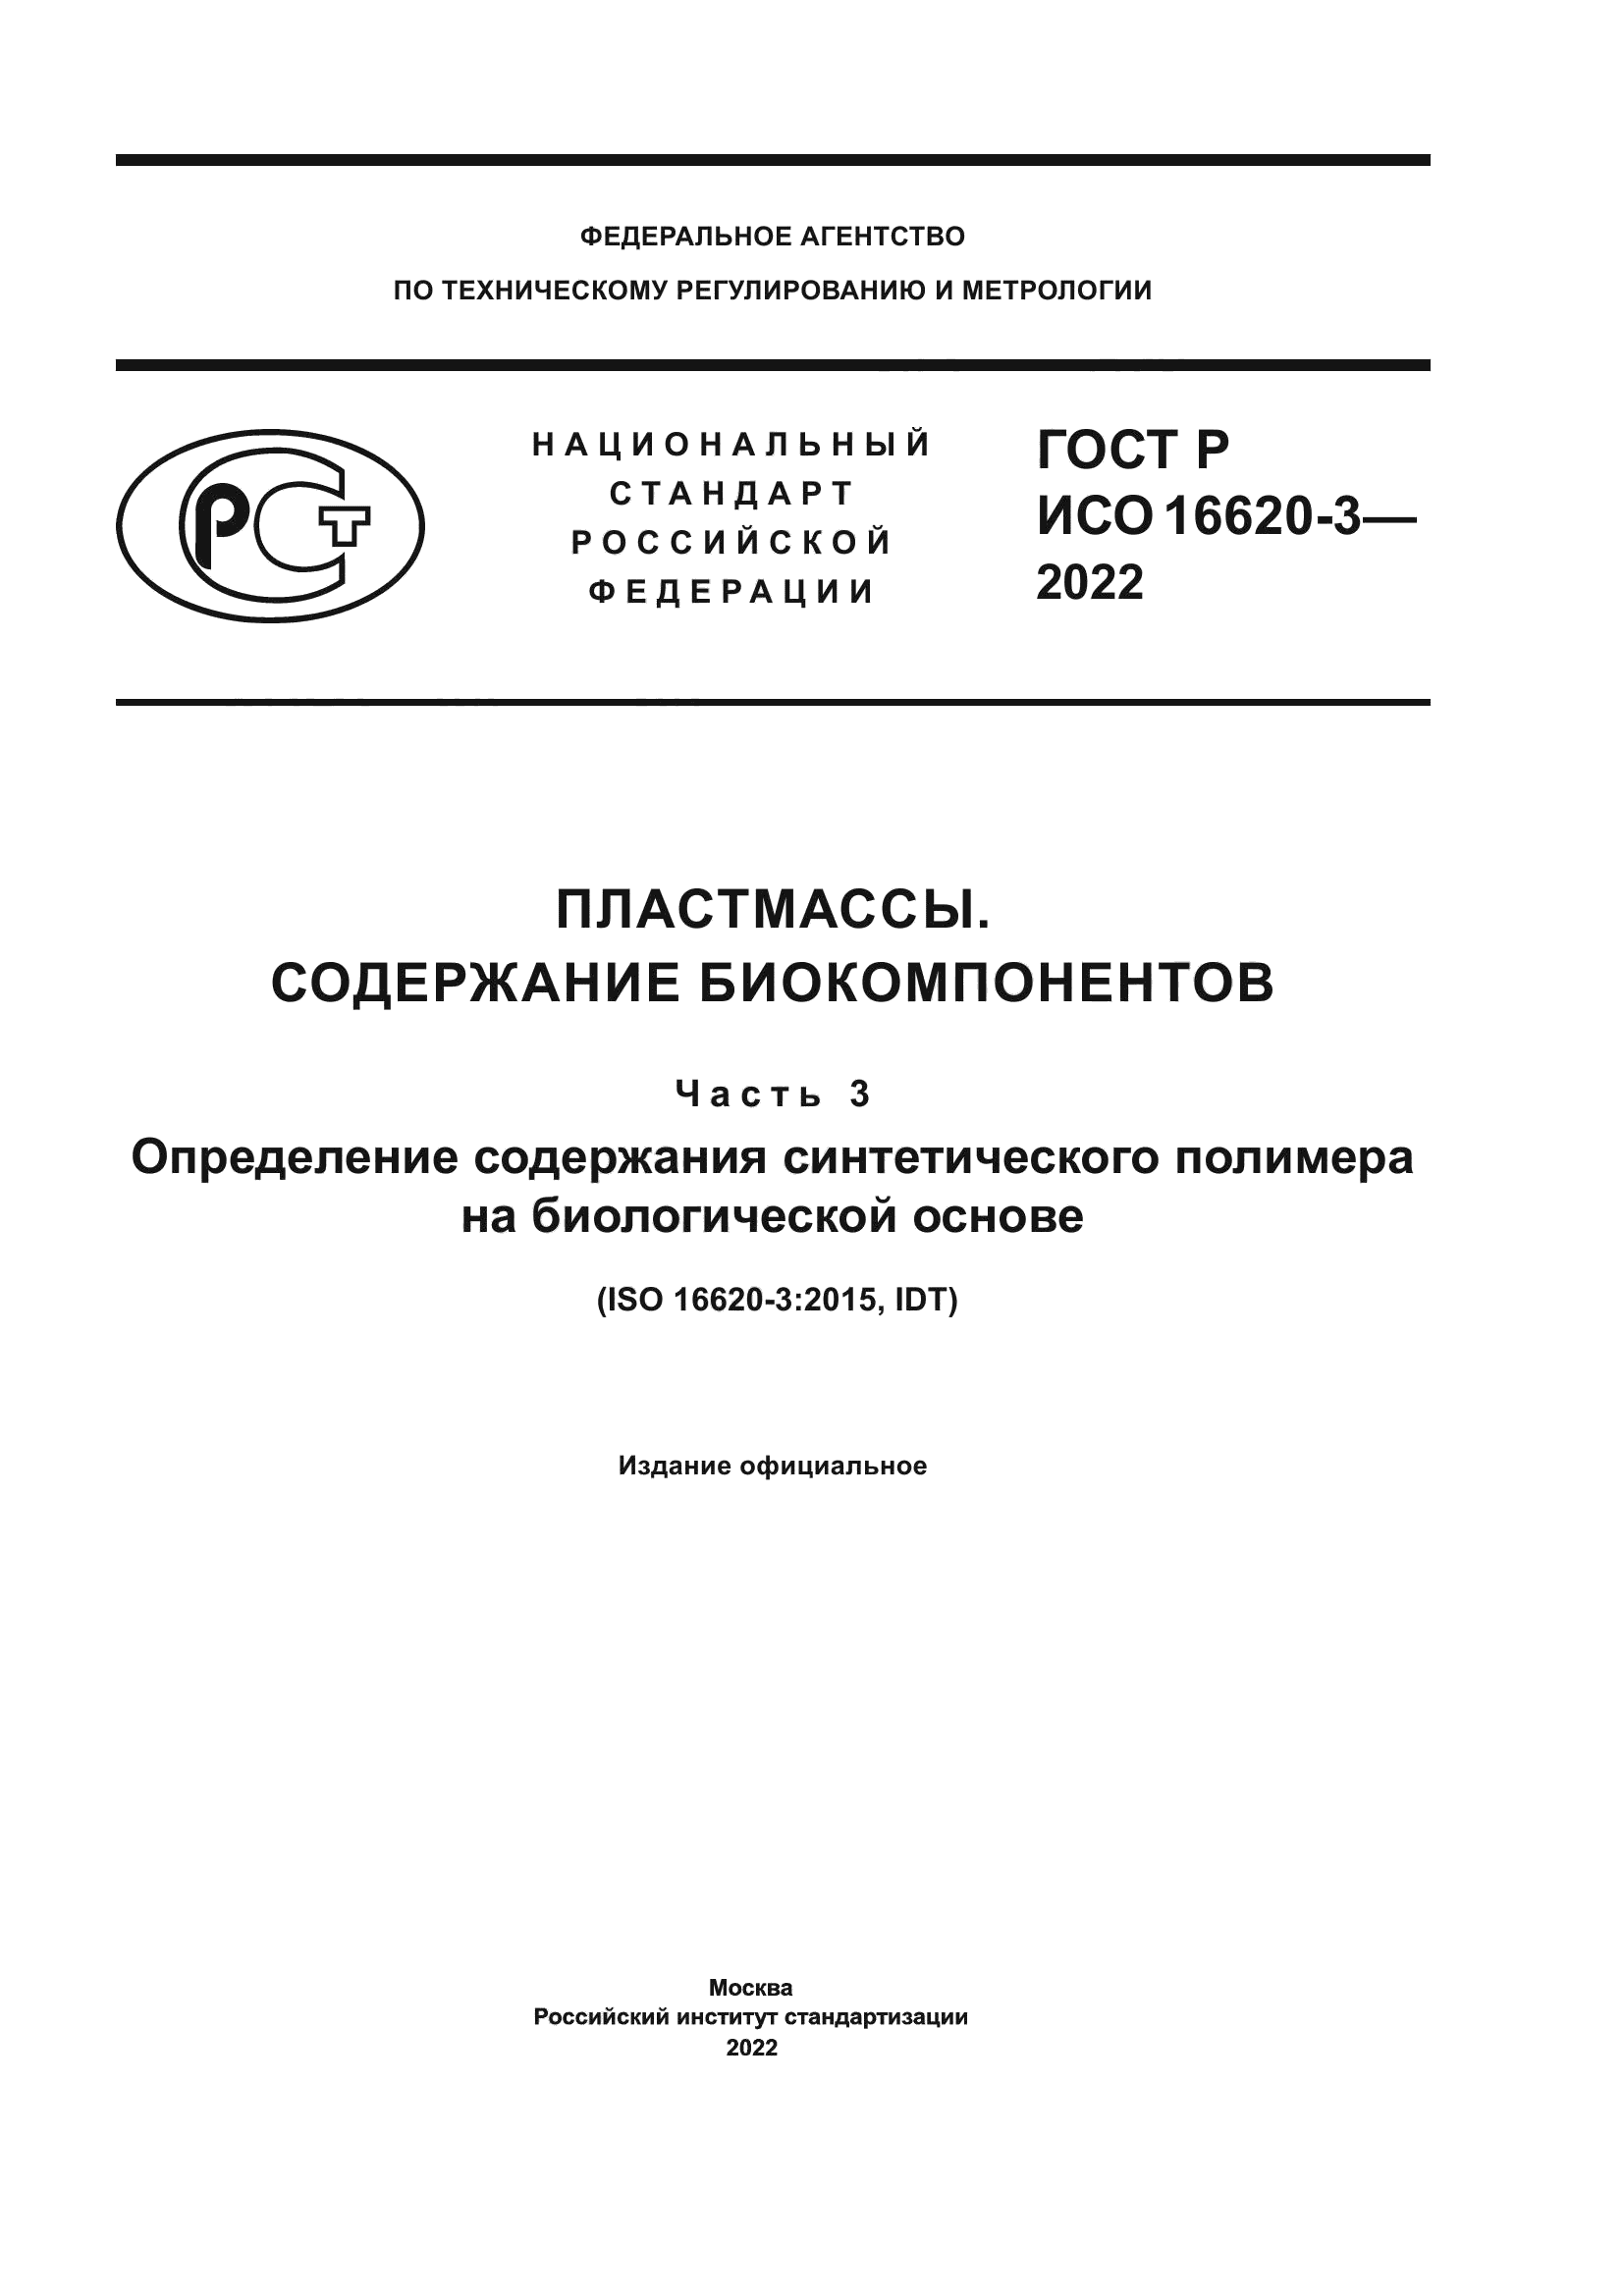 ГОСТ Р ИСО 16620-3-2022